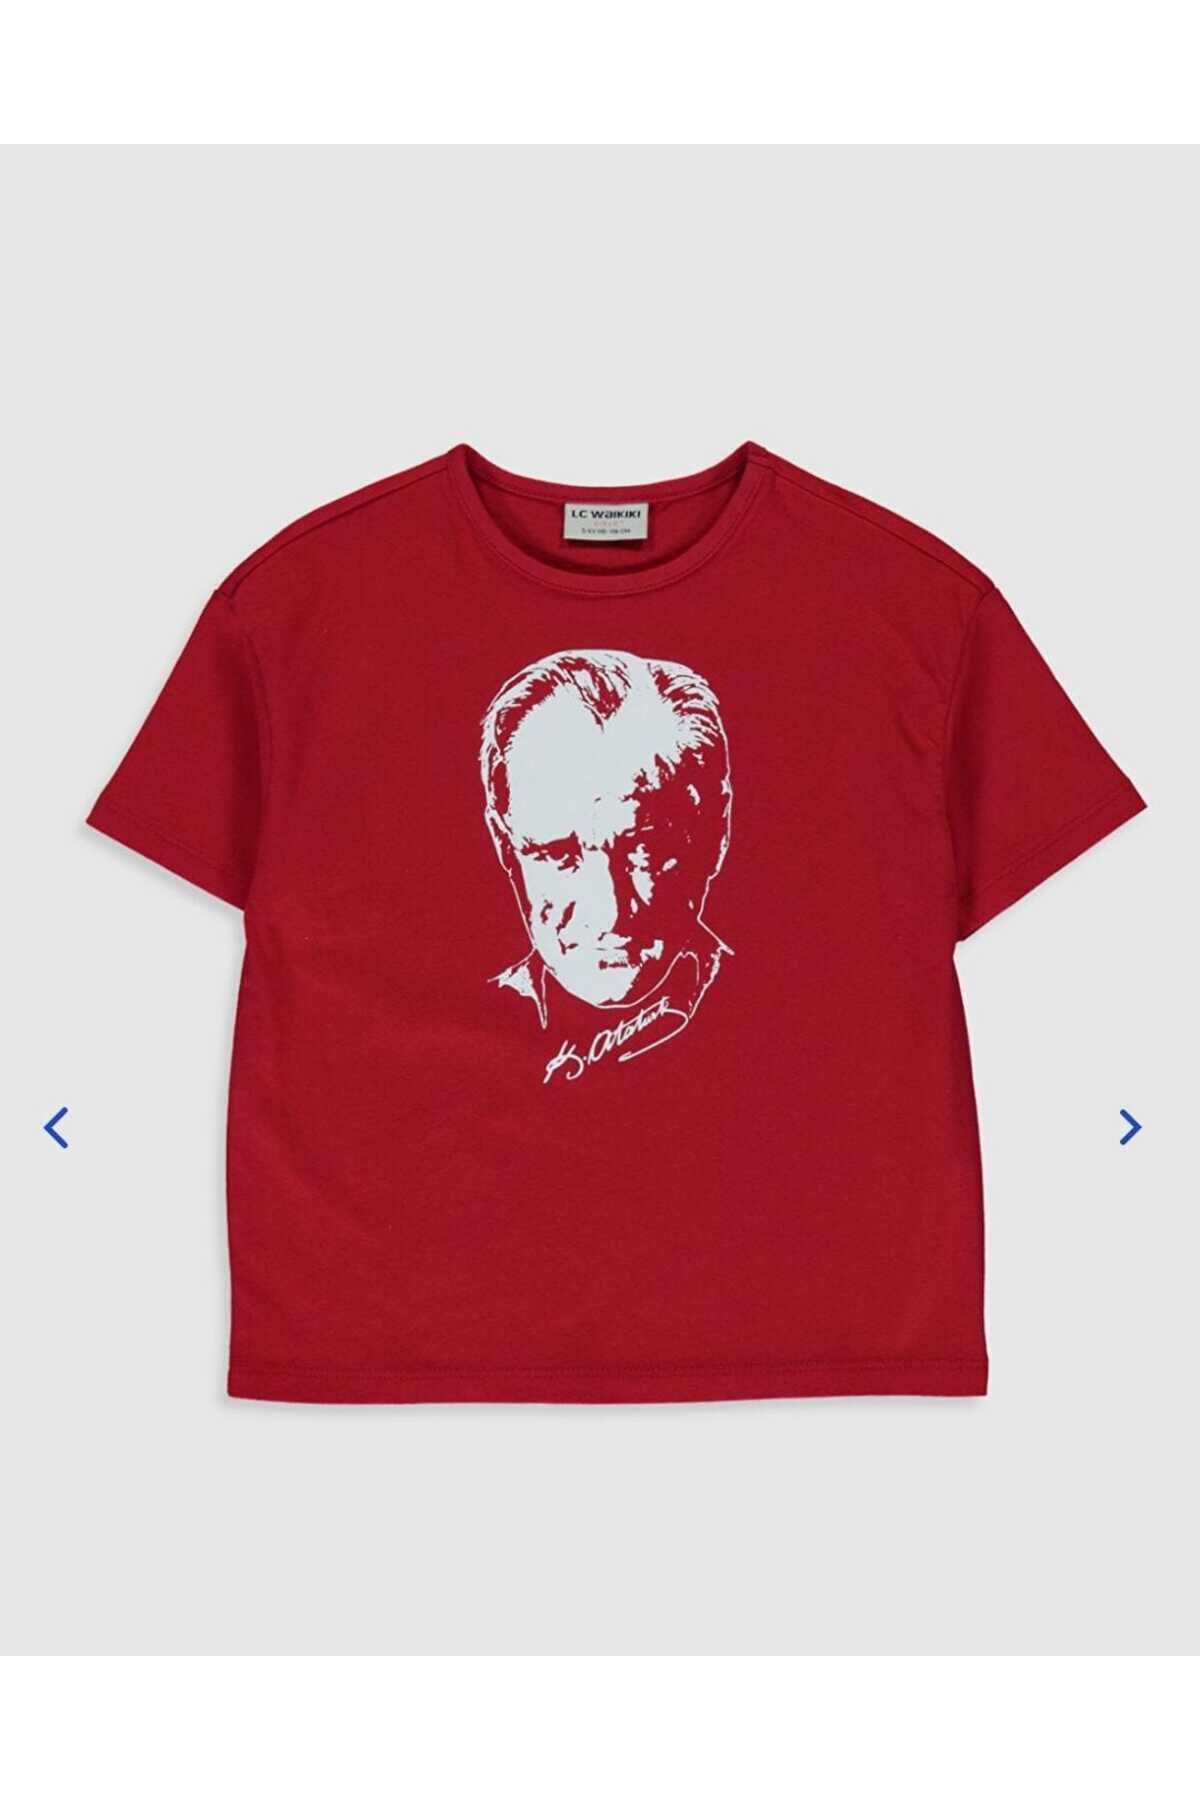 LC Waikiki Atatürk t-shirt - çocuk atatürk ünisex bluz - atatürk bluz - 23 nisan için uygundur